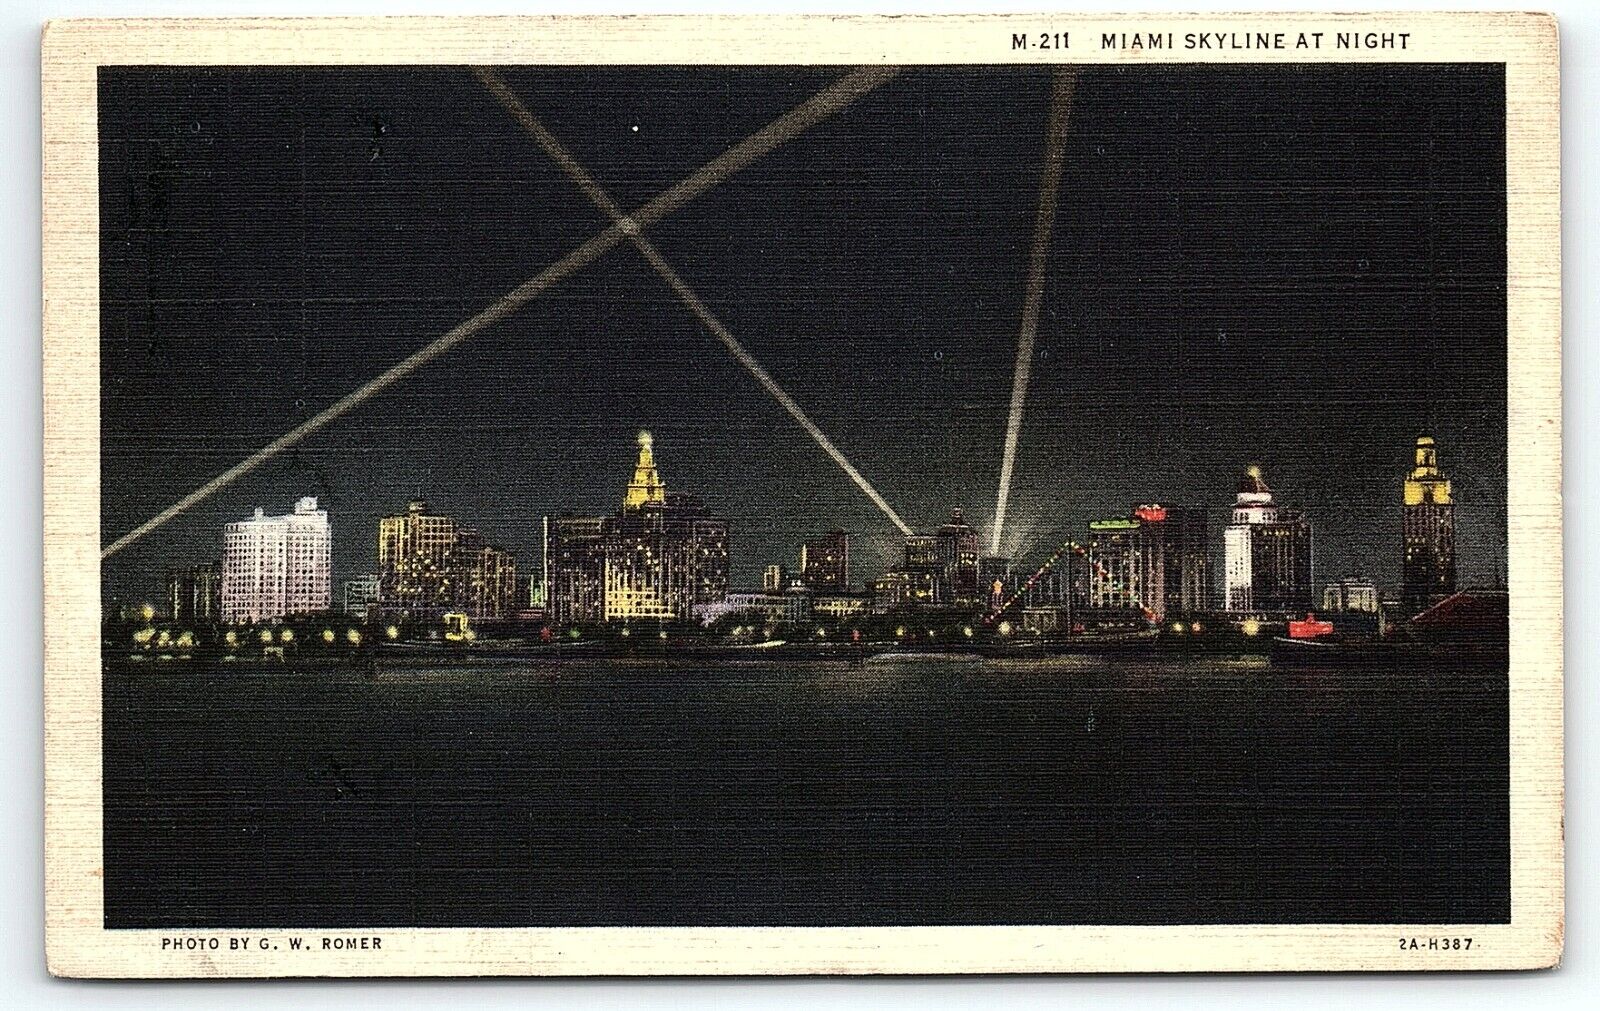 1932 MIAMI FLORIDA MIAMI SKYLINE AT NIGHT C.W. ROMER PHOTO LINEN POSTCARD P2711